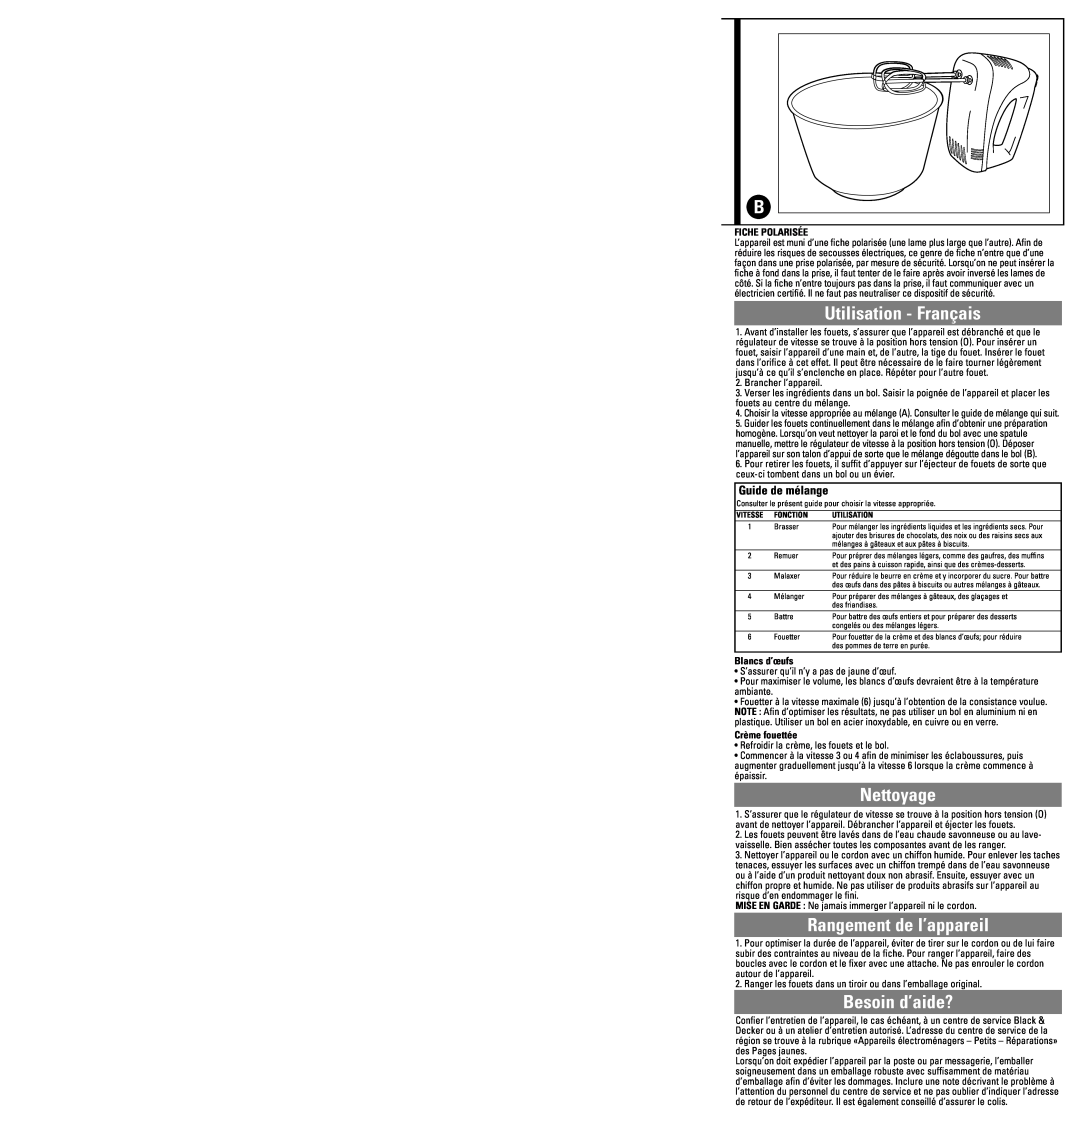 Black & Decker MX20 warranty Utilisation - Français, Nettoyage, Rangement de l’appareil, Besoin d’aide?, Guide de mélange 